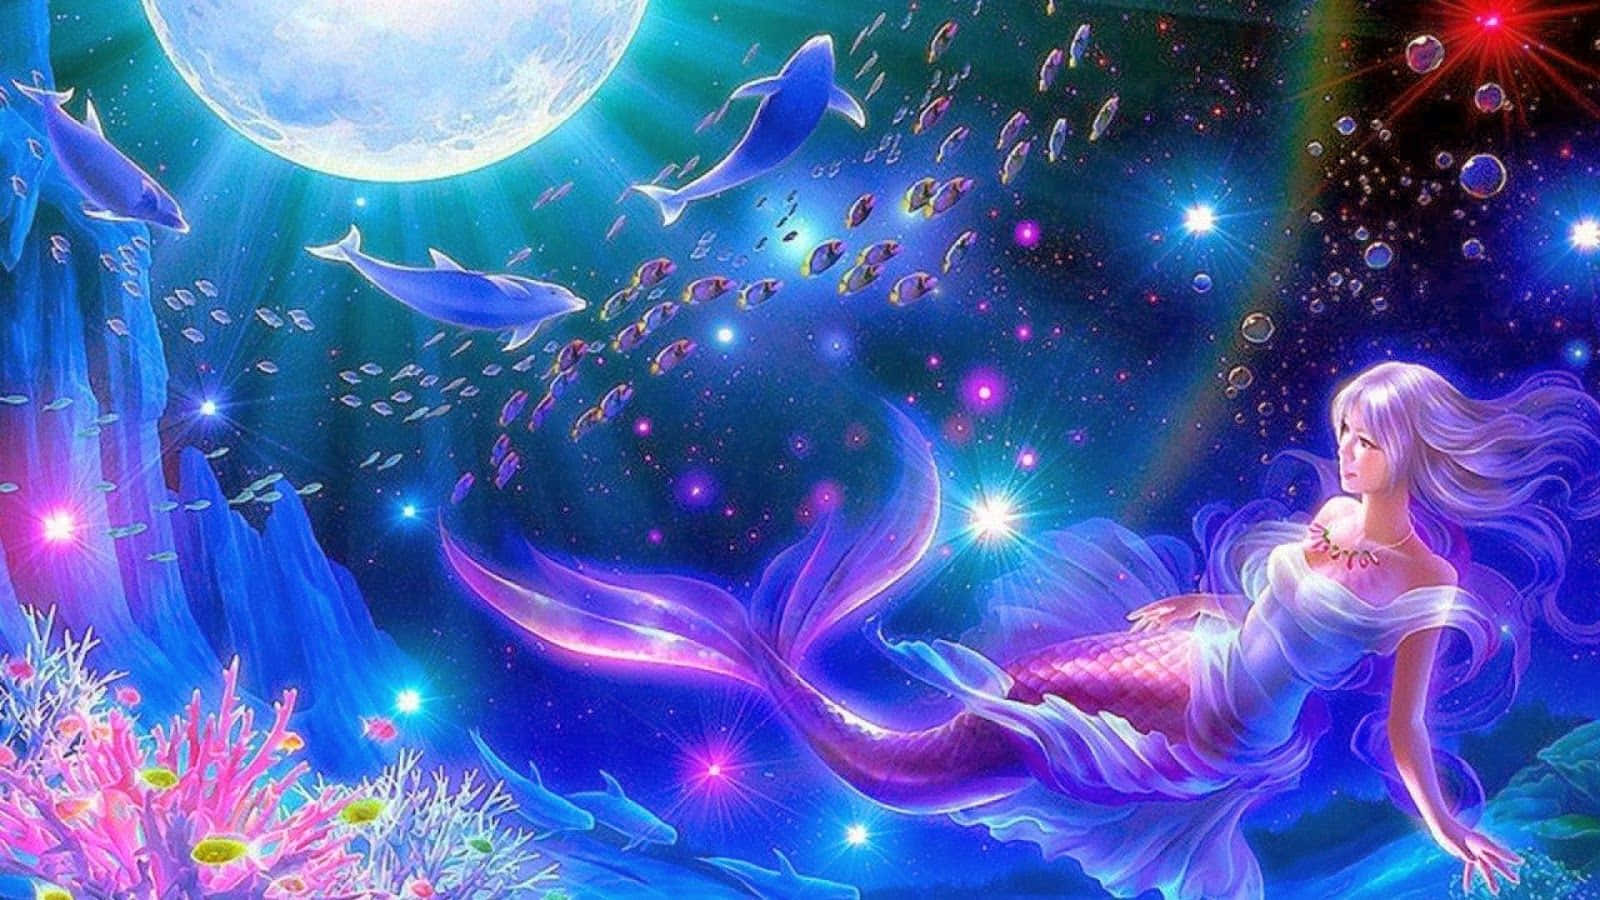 Beautiful Mermaid Digital Art Wallpaper